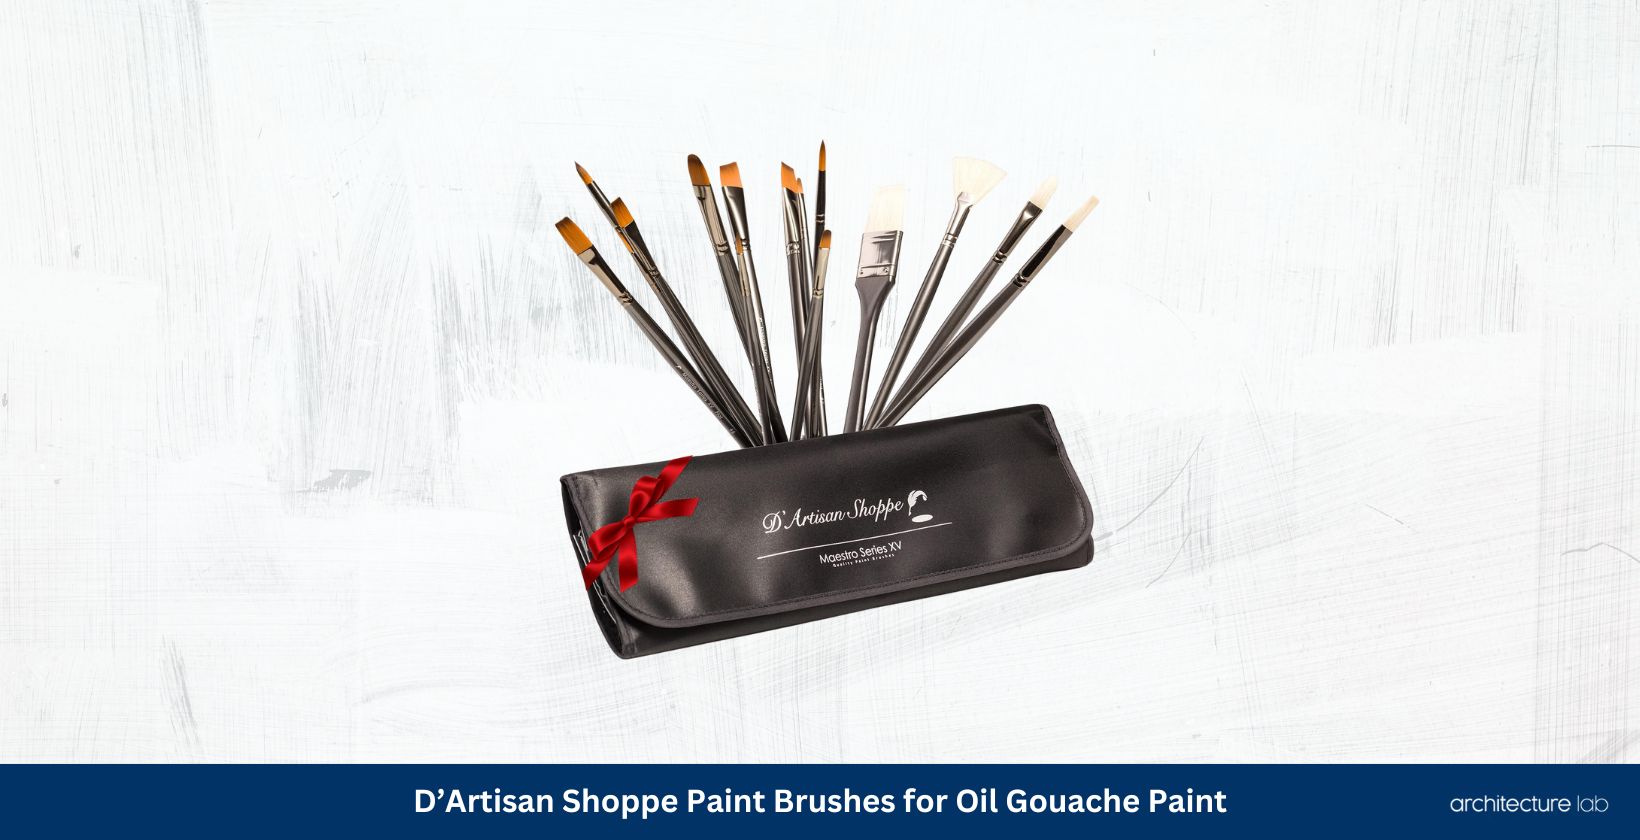 Dartisan shoppe paint brushes for oil gouache paint